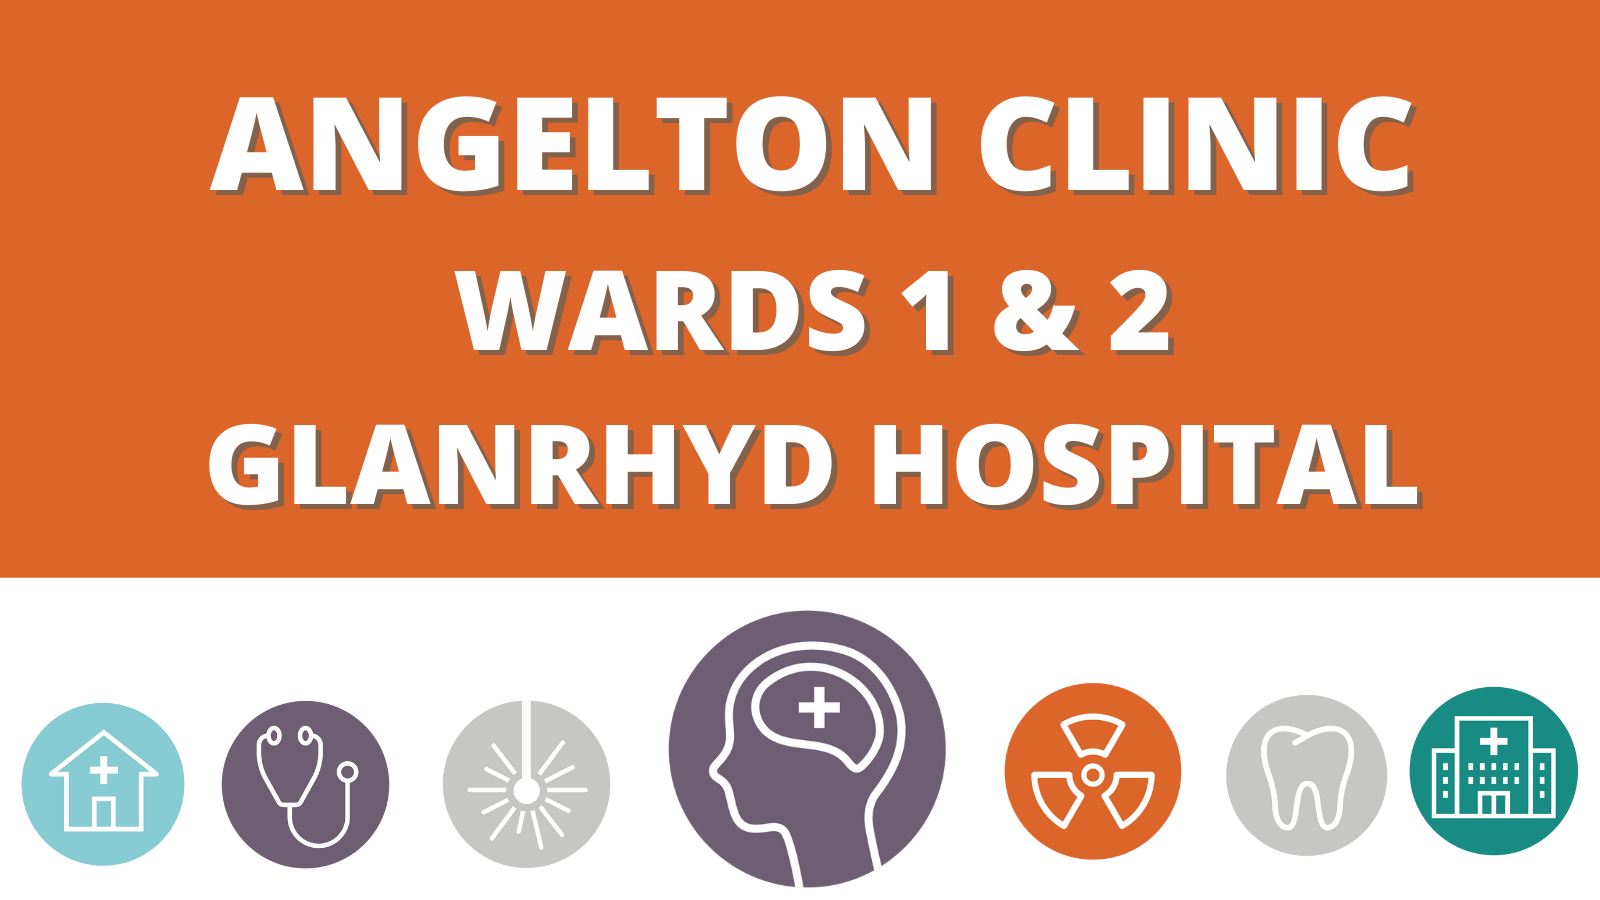 Angelton Clinic Wards 1 & 2 - Glanrhyd Hospital